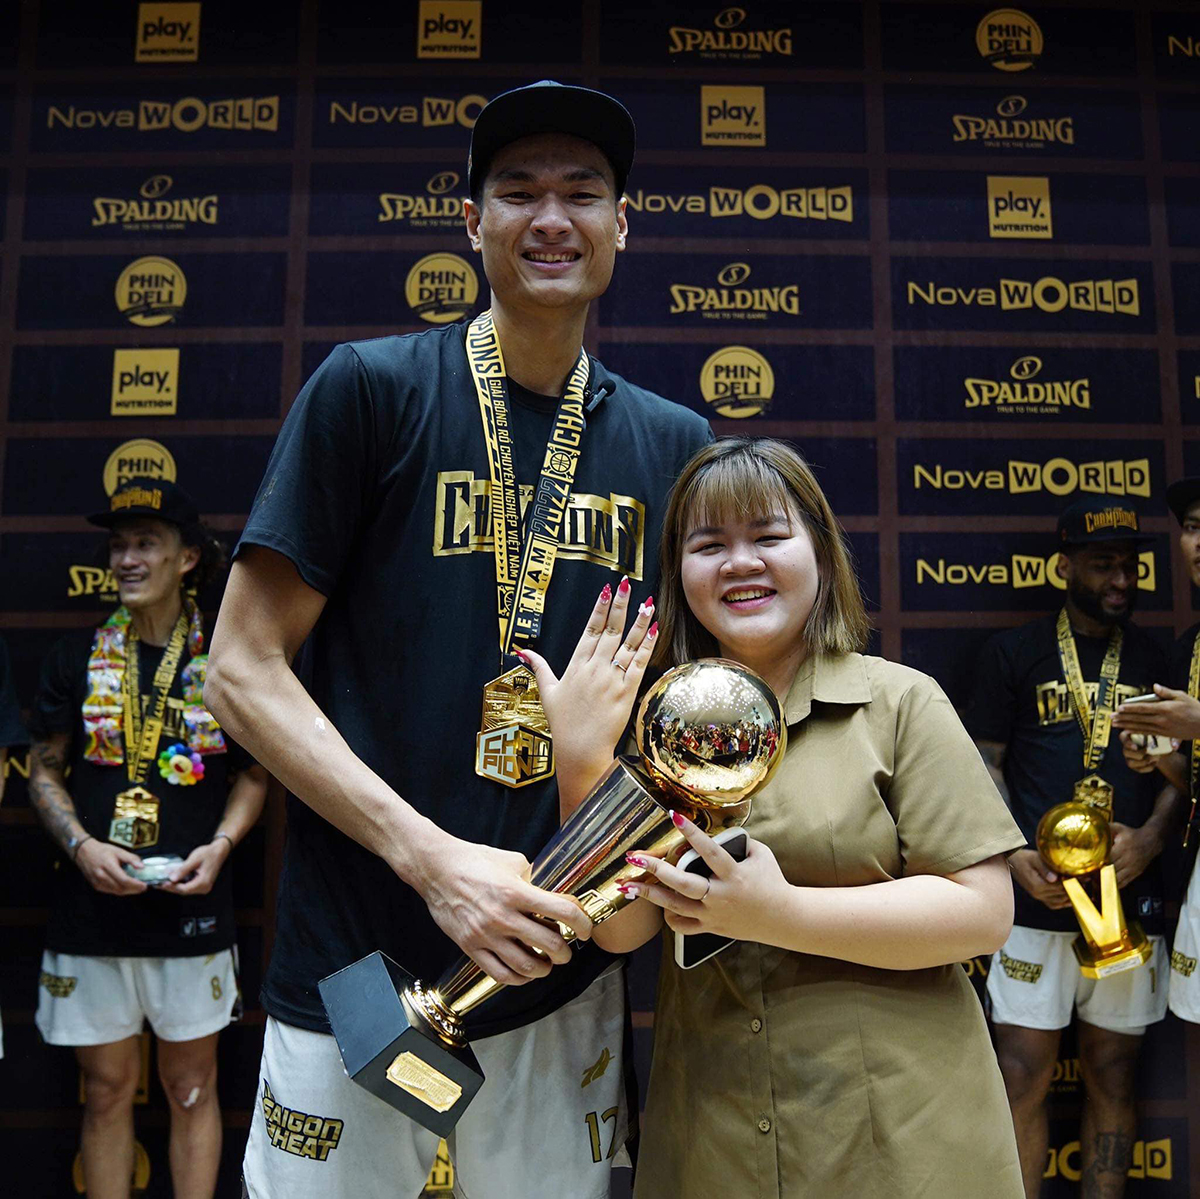 Cầu thủ bóng rổ cao nhất Việt Nam cầu hôn bạn gái sau chức vô địch